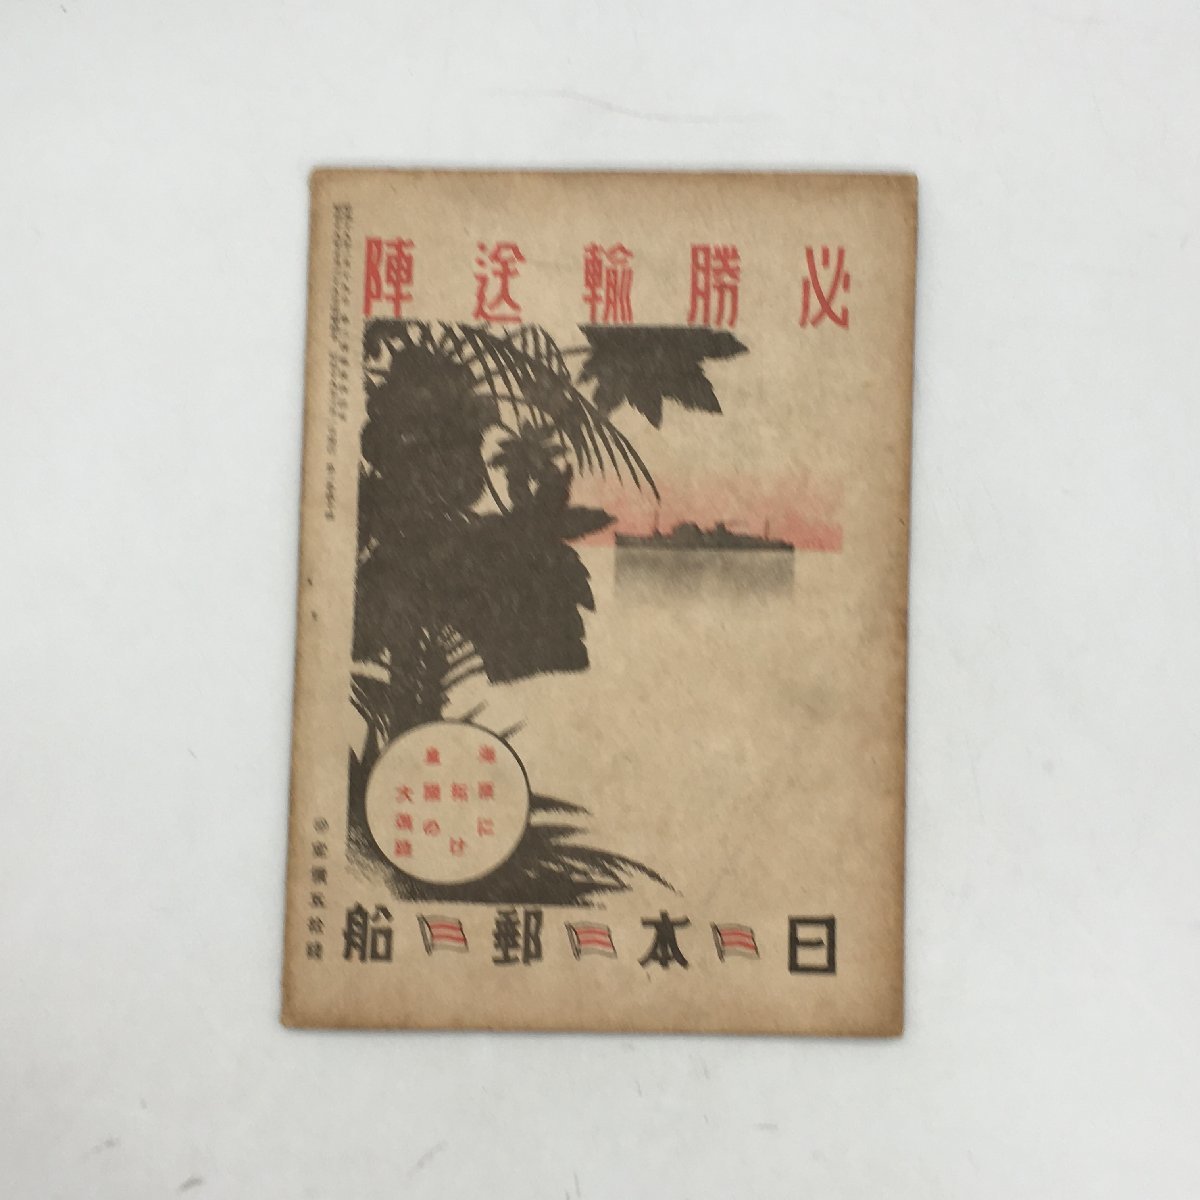 『海と船 2巻10号』 昭和19年11月号 日本海事振興会 旧日本軍 軍事資料 文献  の画像2